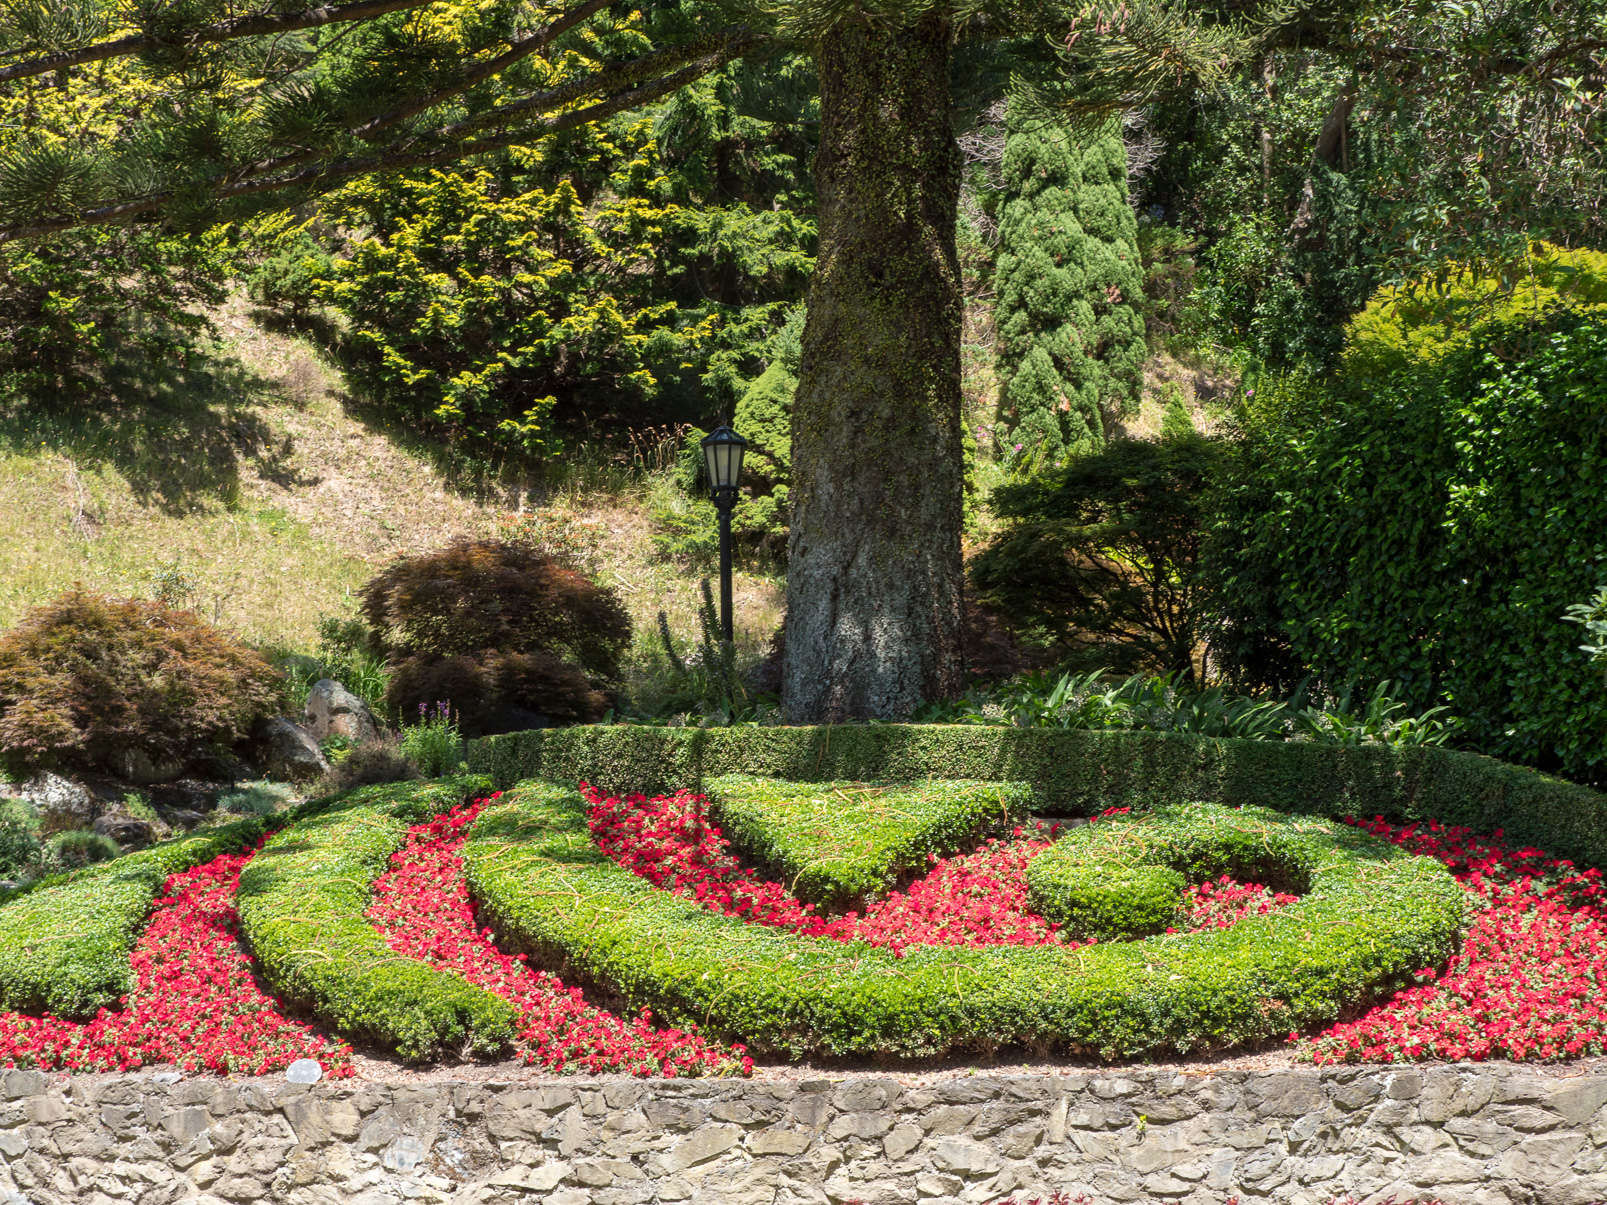 Le jardin botanique de Wellington offre plus de 26 hectares de vues imprenables, avec des paysages uniques, des forêts exotiques, du bush, des parterres de fleurs multicolores.